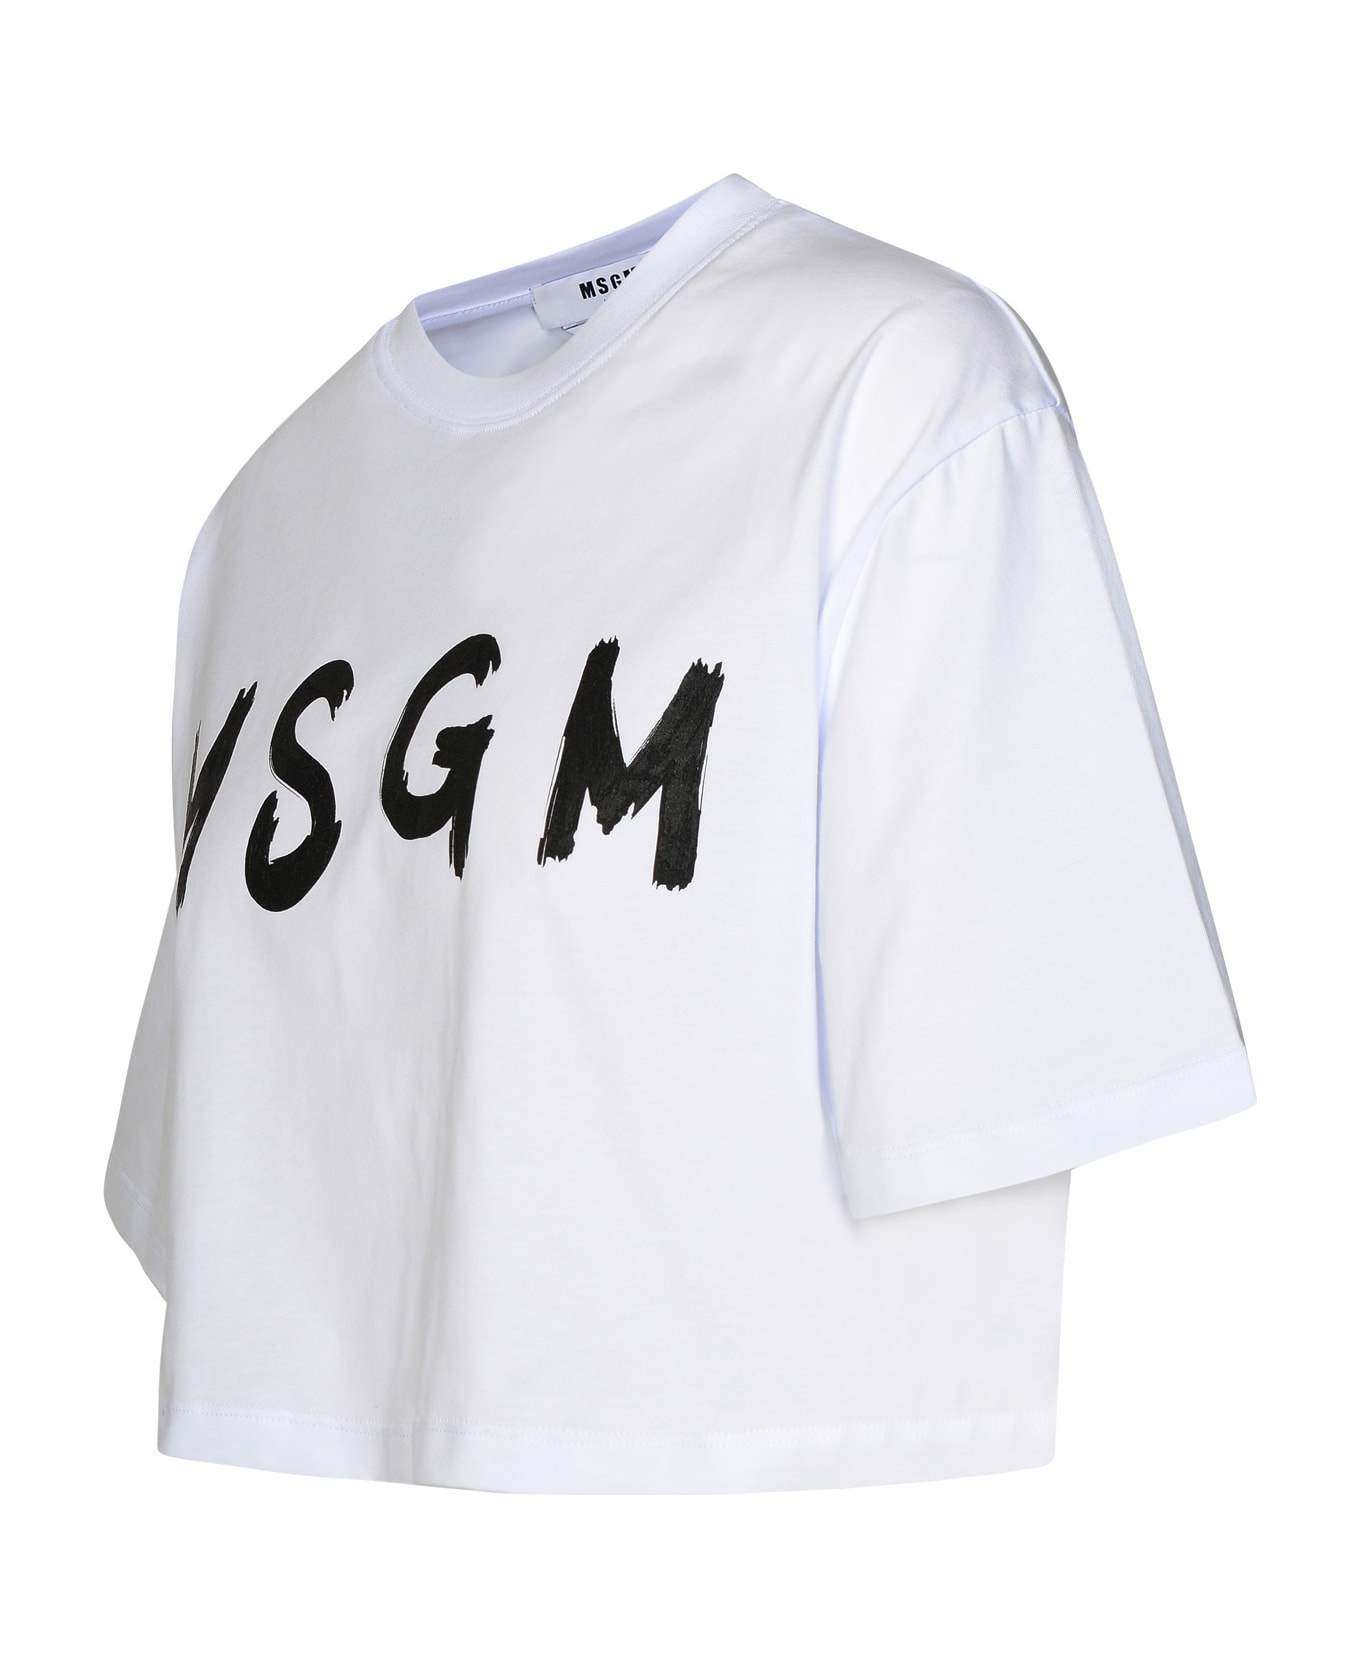 MSGM White Cotton T-shirt - White